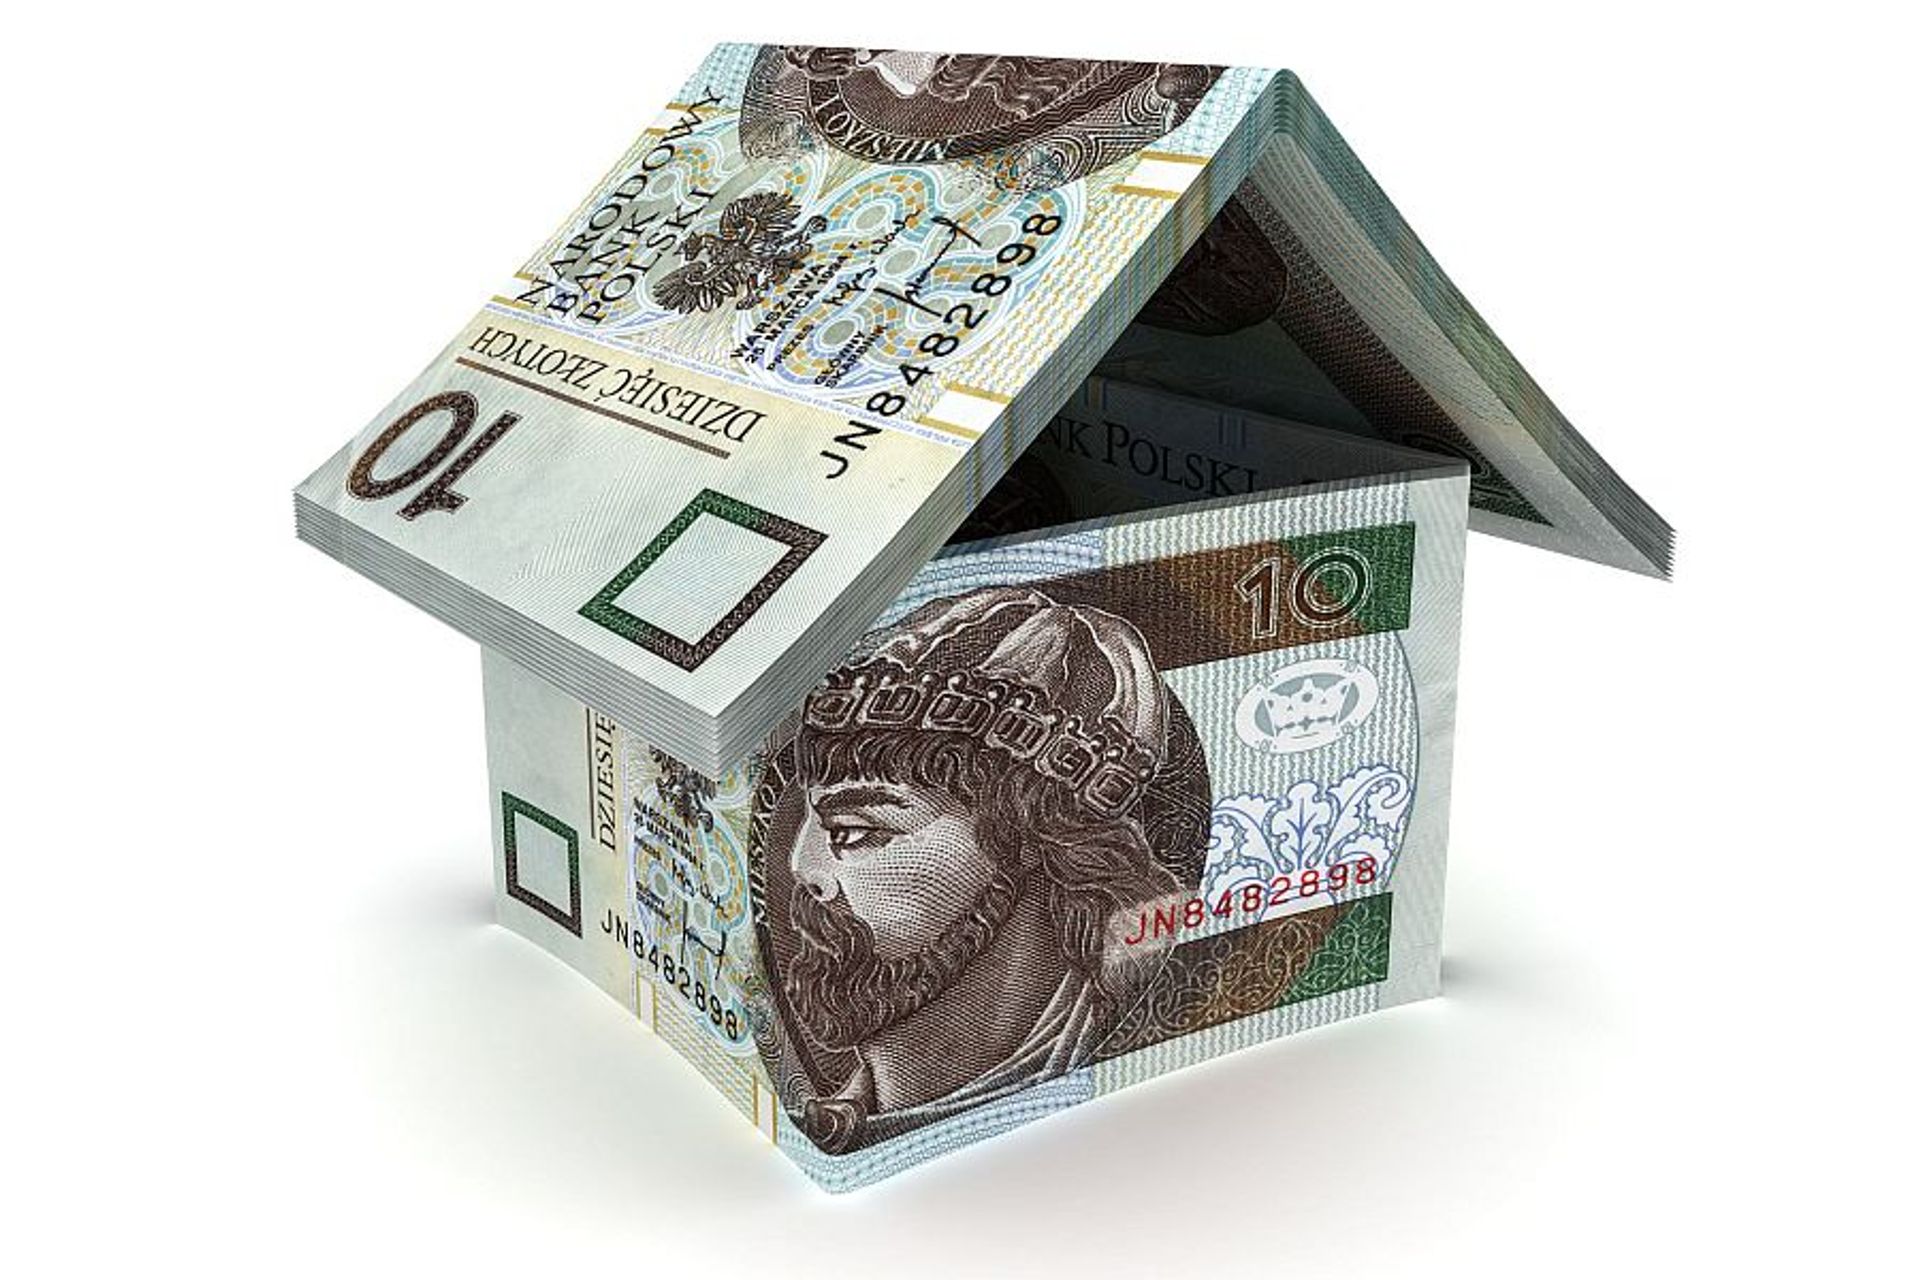  Kredyty mieszkaniowe z coraz większym wzięciem